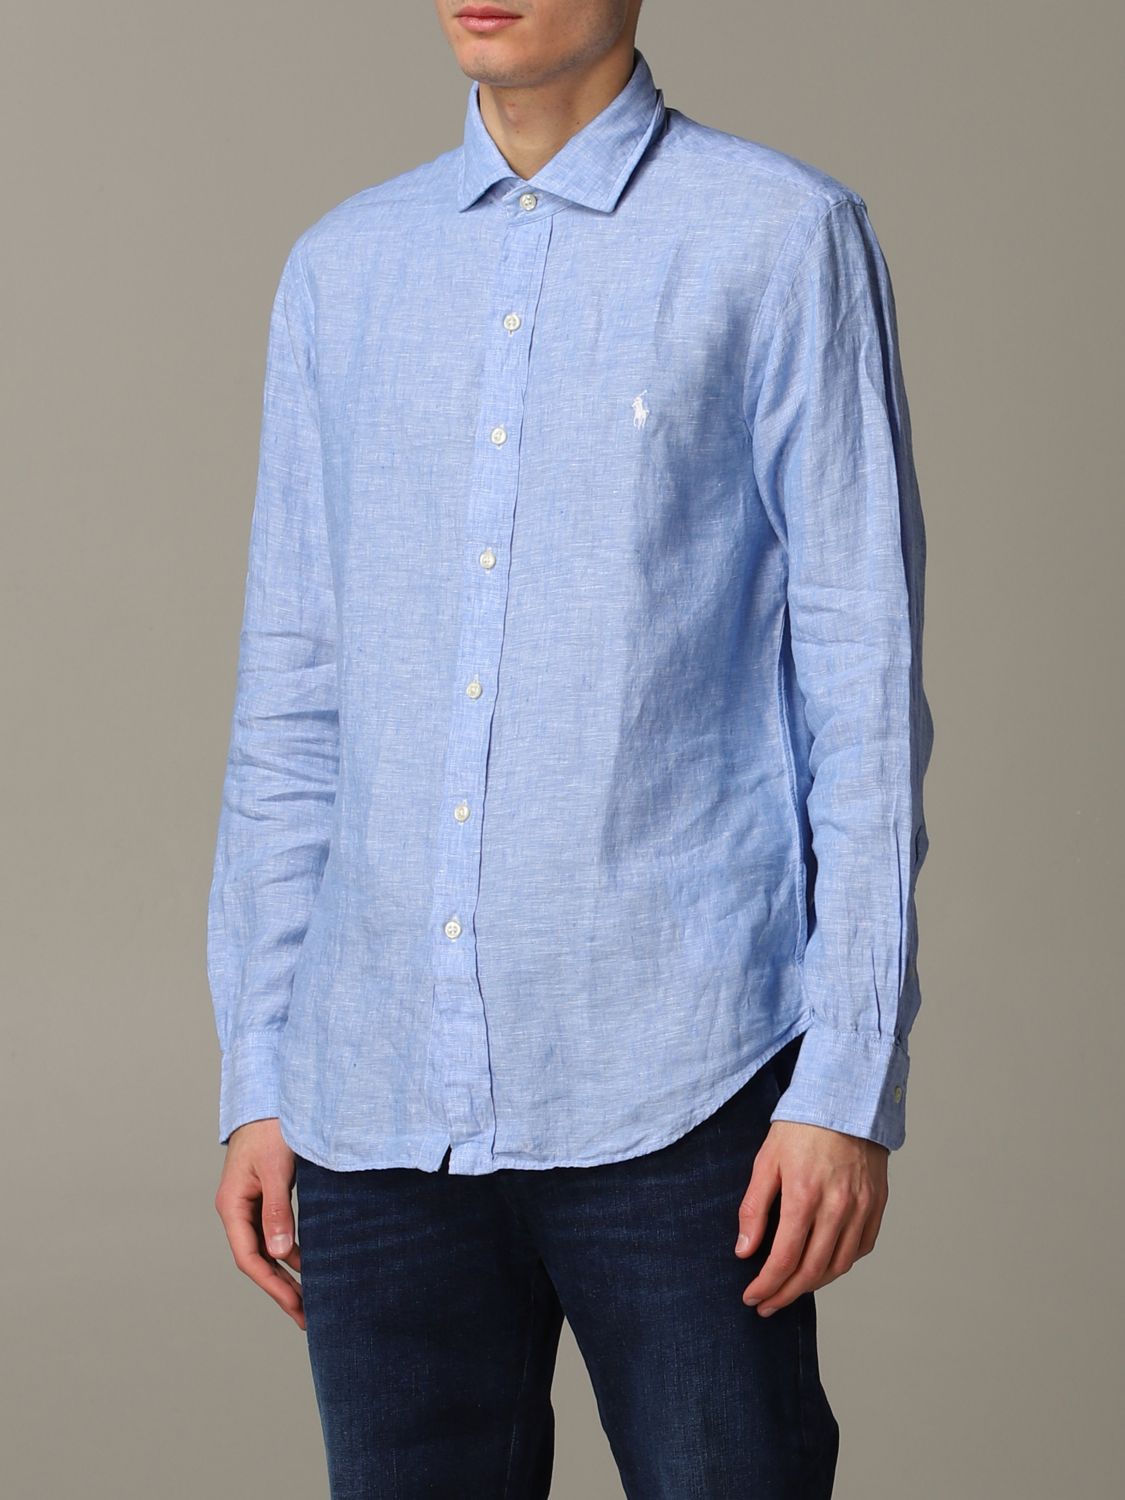 Shirt Polo Ralph Lauren: Polo Ralph Lauren shirt for men gnawed blue 4